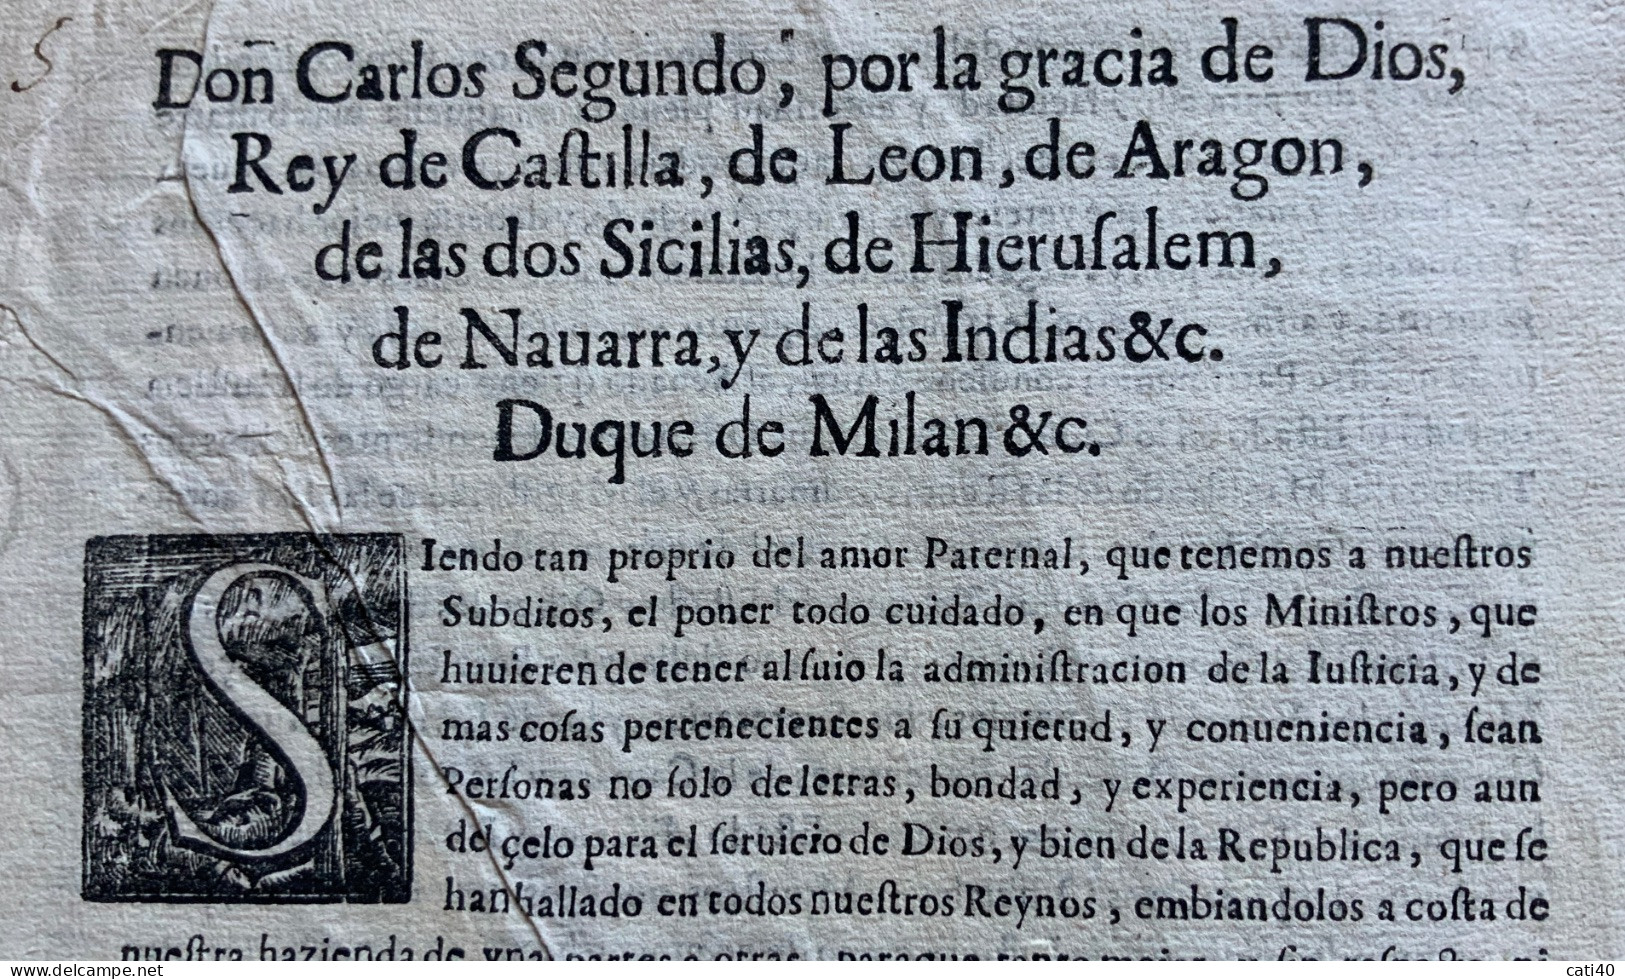 CARLO II DI SPAGNA - 25 /10/1678 - EDITTO IN QUATTRO PAGINE - RRR - Historical Documents